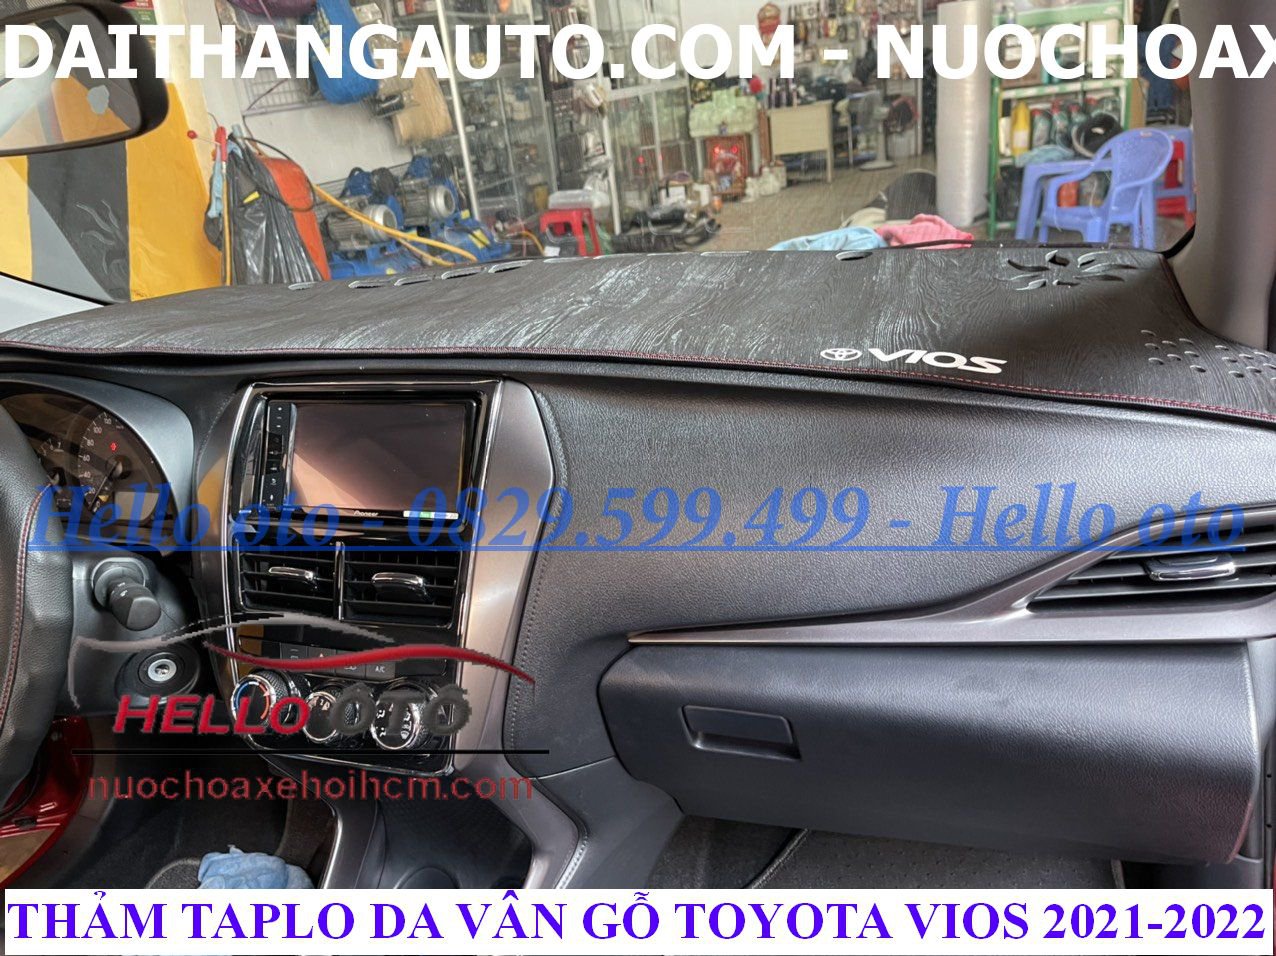 Thảm Taplo Da Vân Gỗ Chống Nắng Toyota Vios 2021-2022